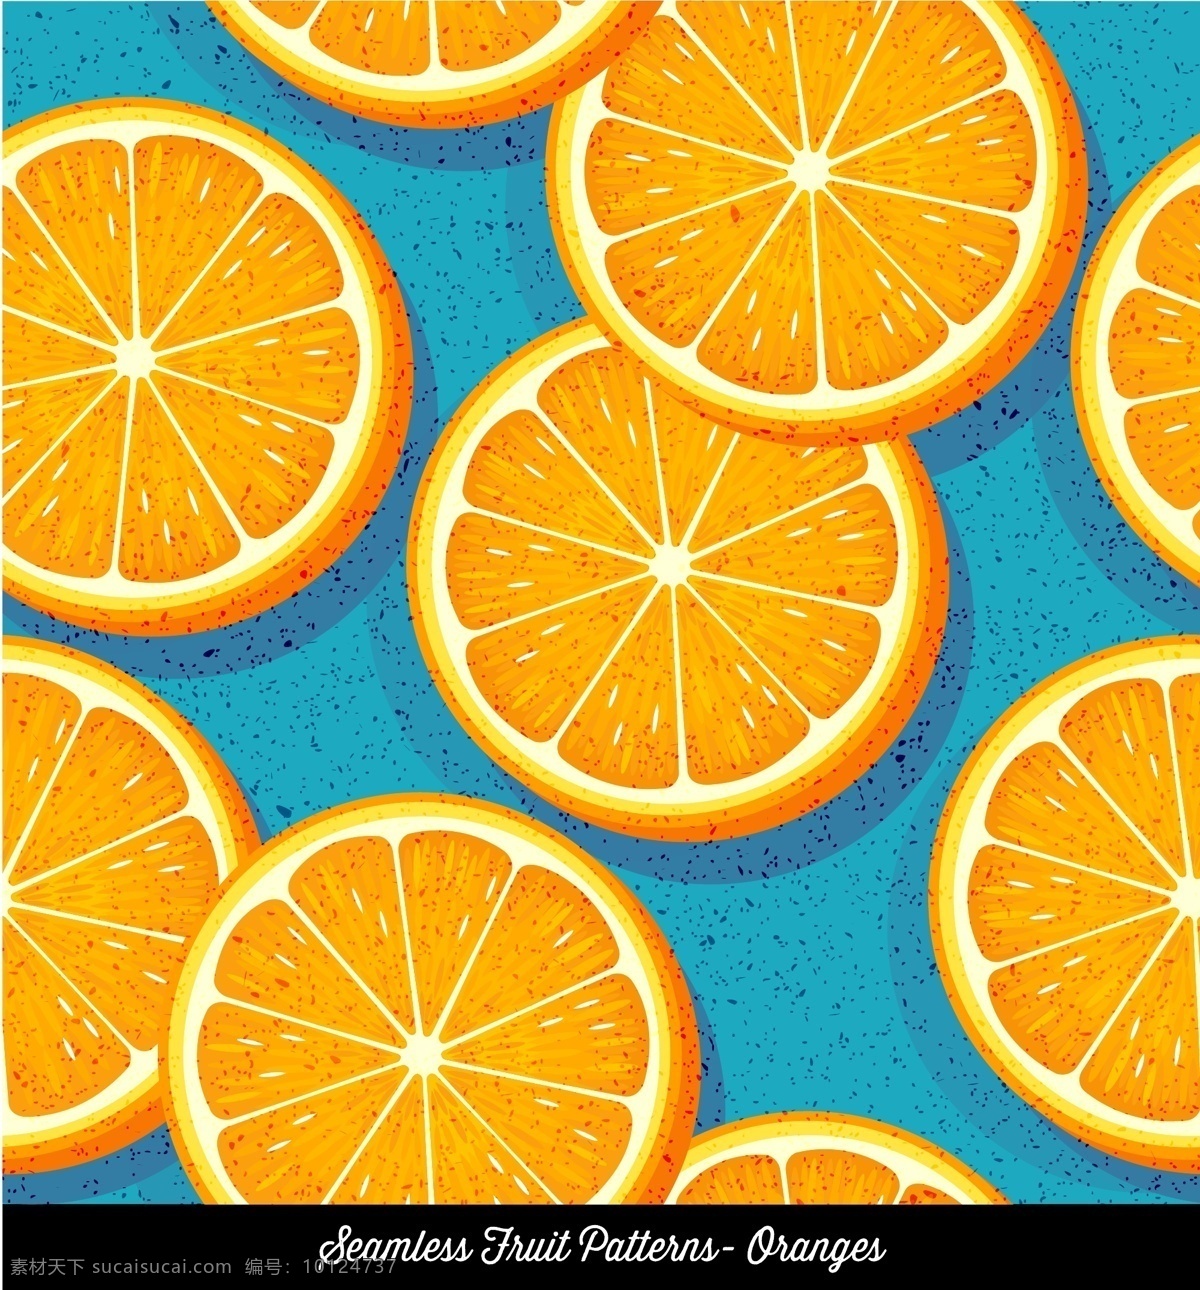 橙子 切片 无缝 背景图片 夏季 无缝背景 矢量图 格式 矢量 高清图片